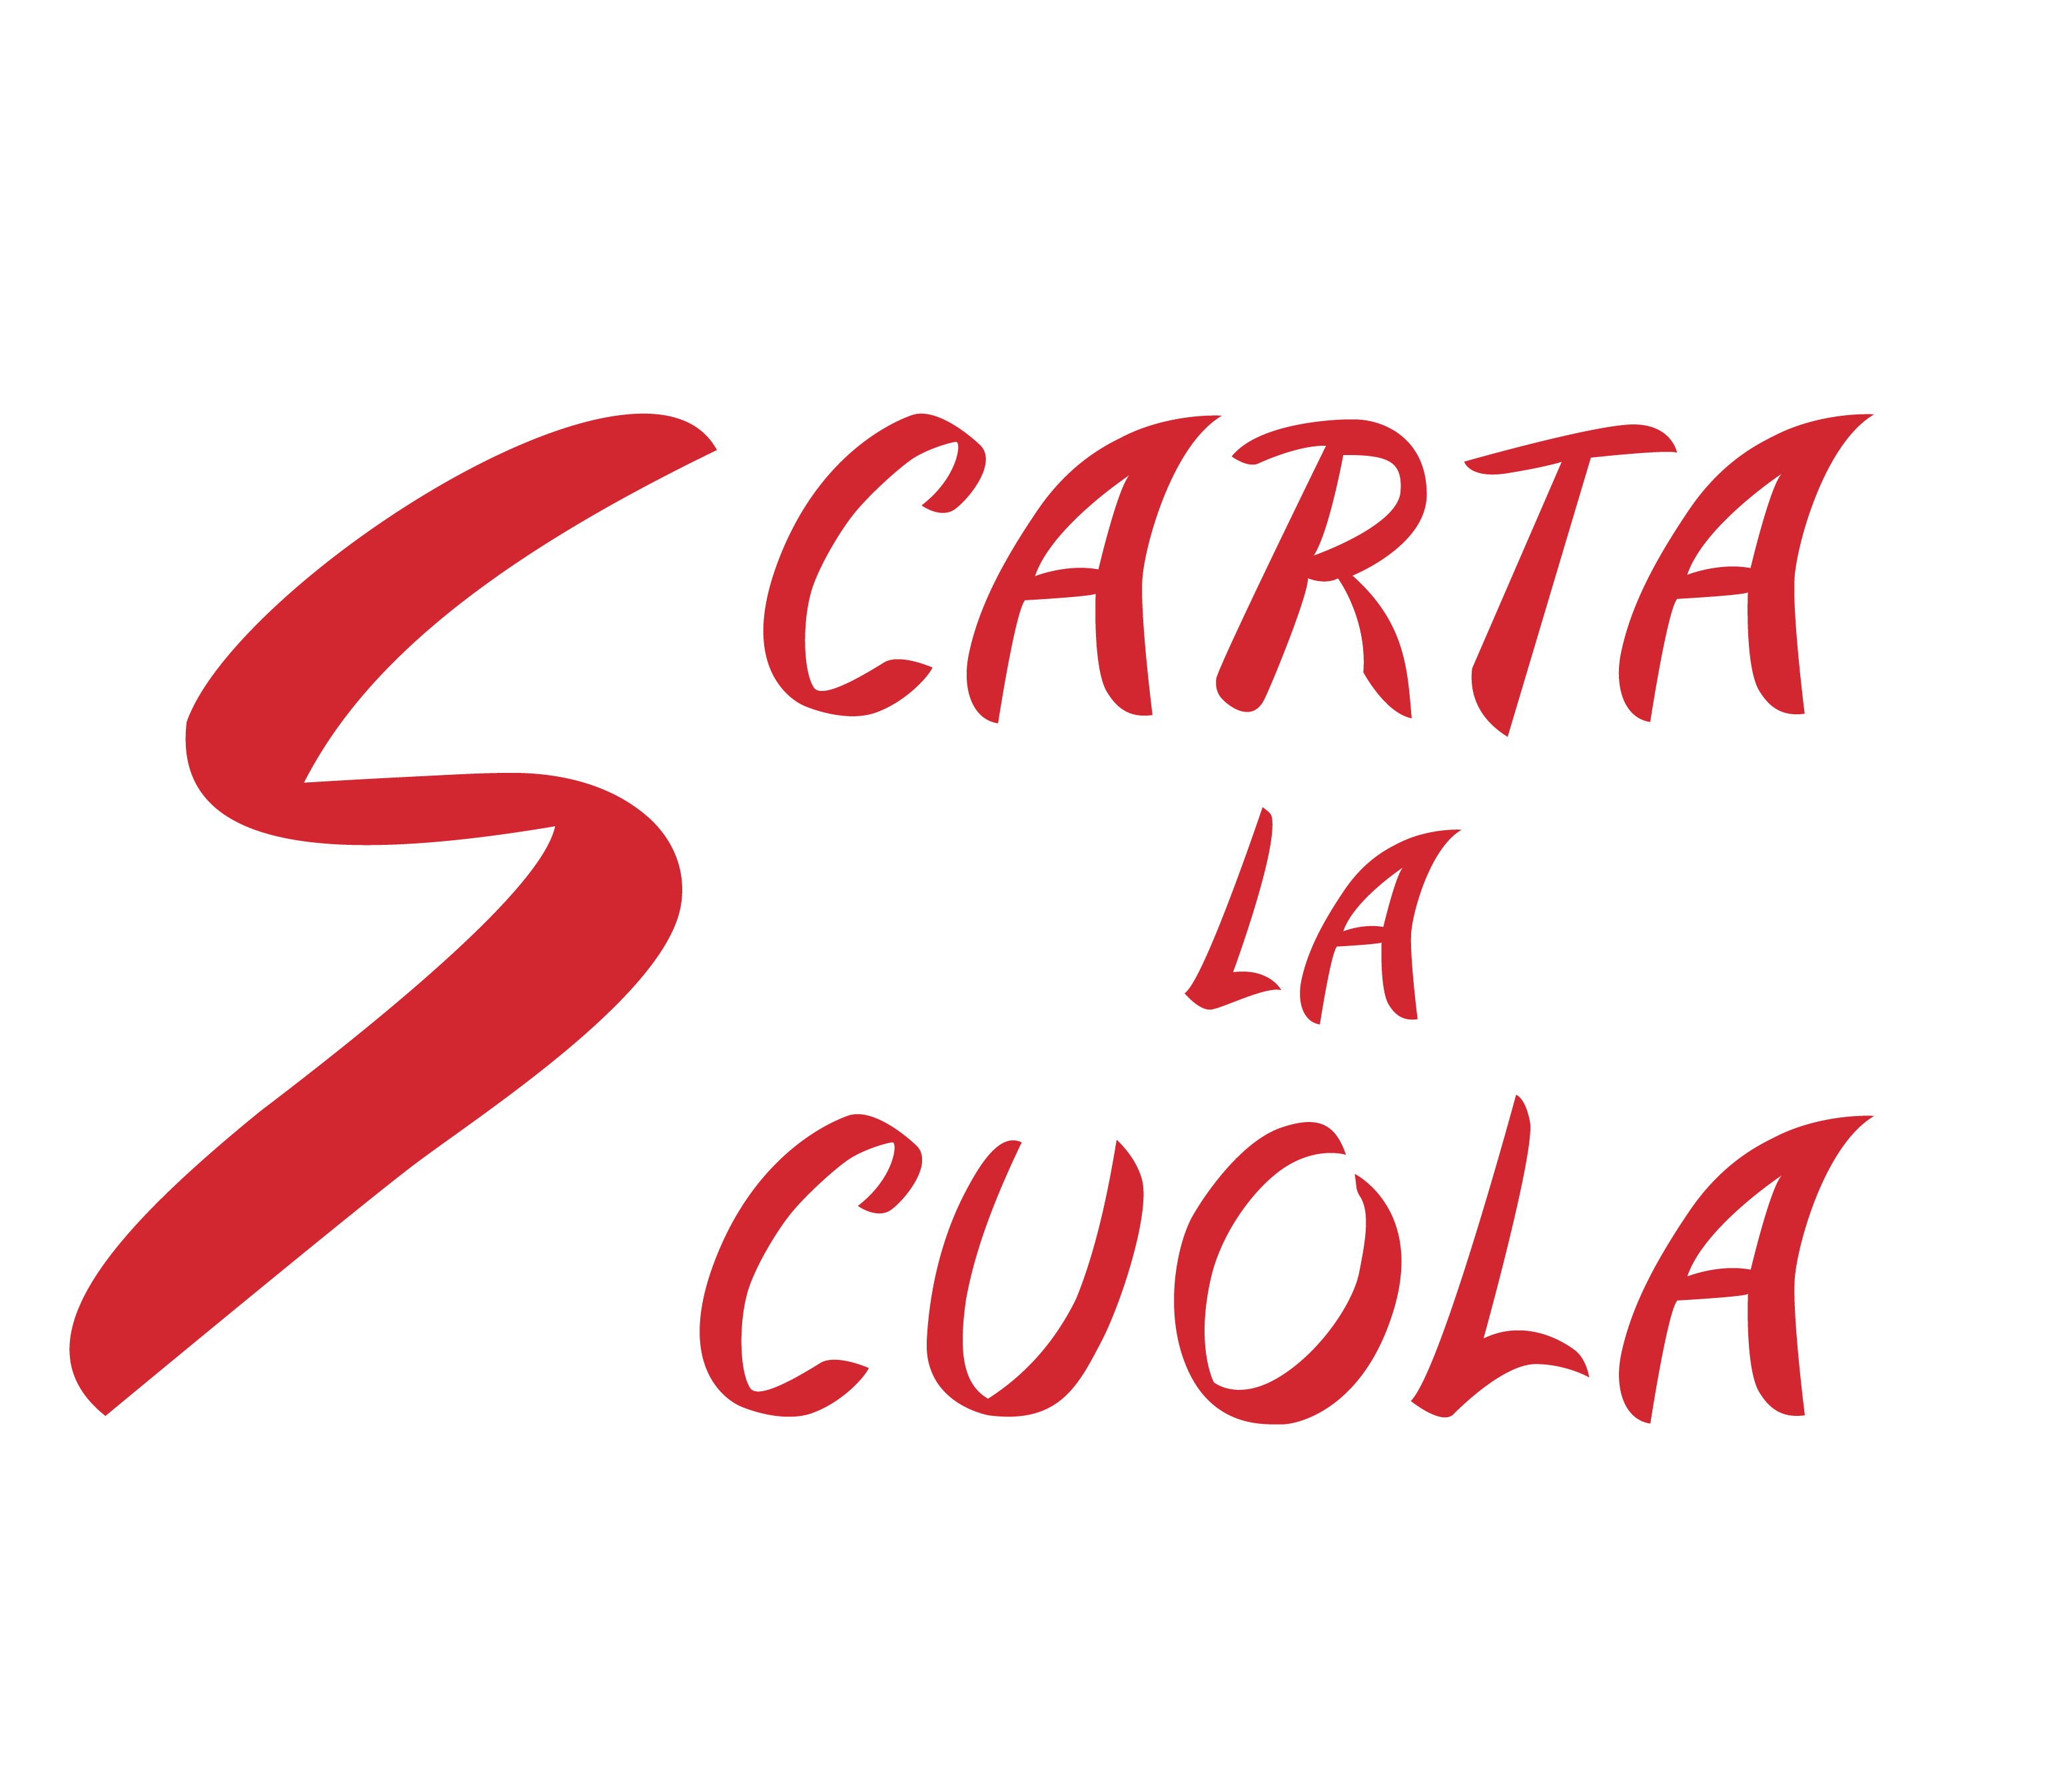 ScartaLaScuola